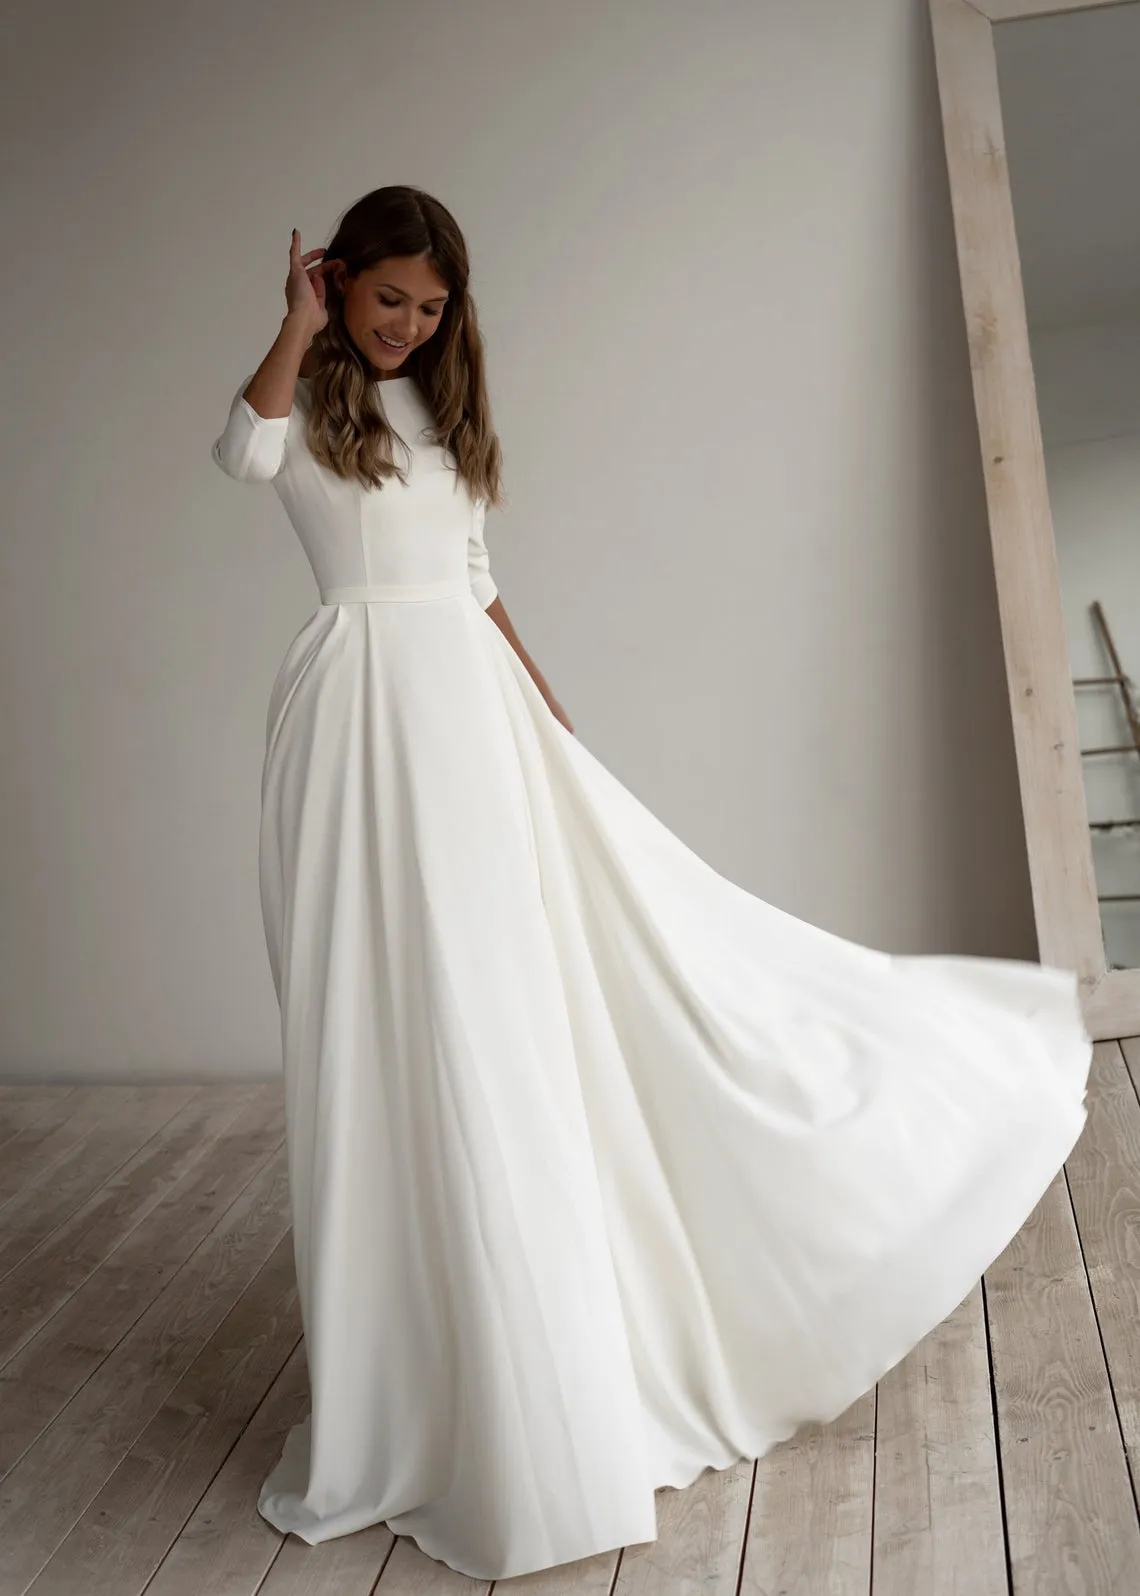 2020 A-Linie Crepe bescheidenes Hochzeitskleid mit langen Ärmeln, Tasche, Sweep-Zug, schlicht, elegant, informell, Boho-Brautkleider mit Ärmeln, individuell gestaltet M271b